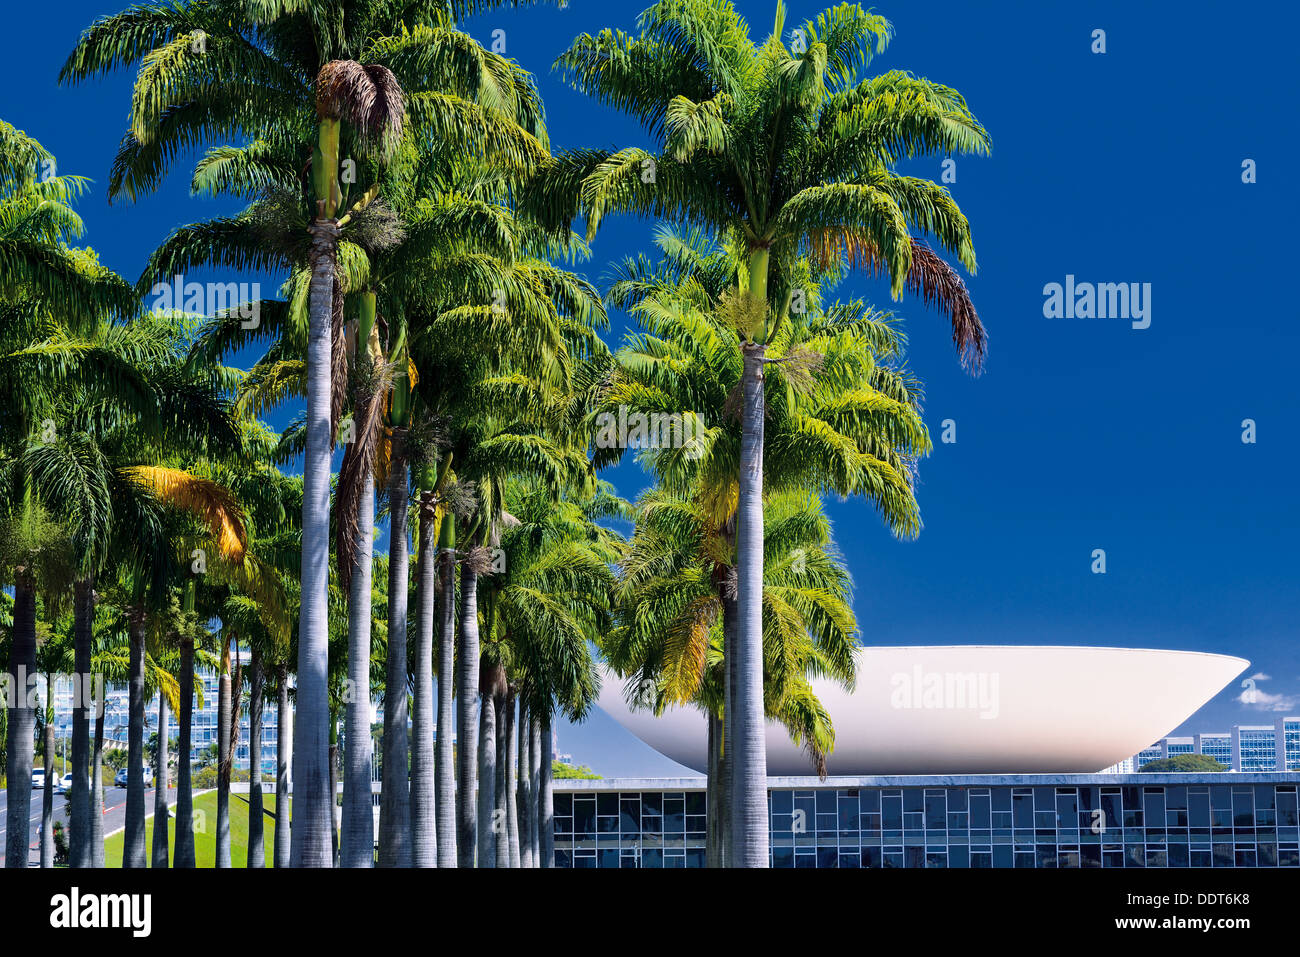 Il Brasile, Brasilia: palme e la vista dal lato posteriore del Congresso Nazionale di costruzione Foto Stock